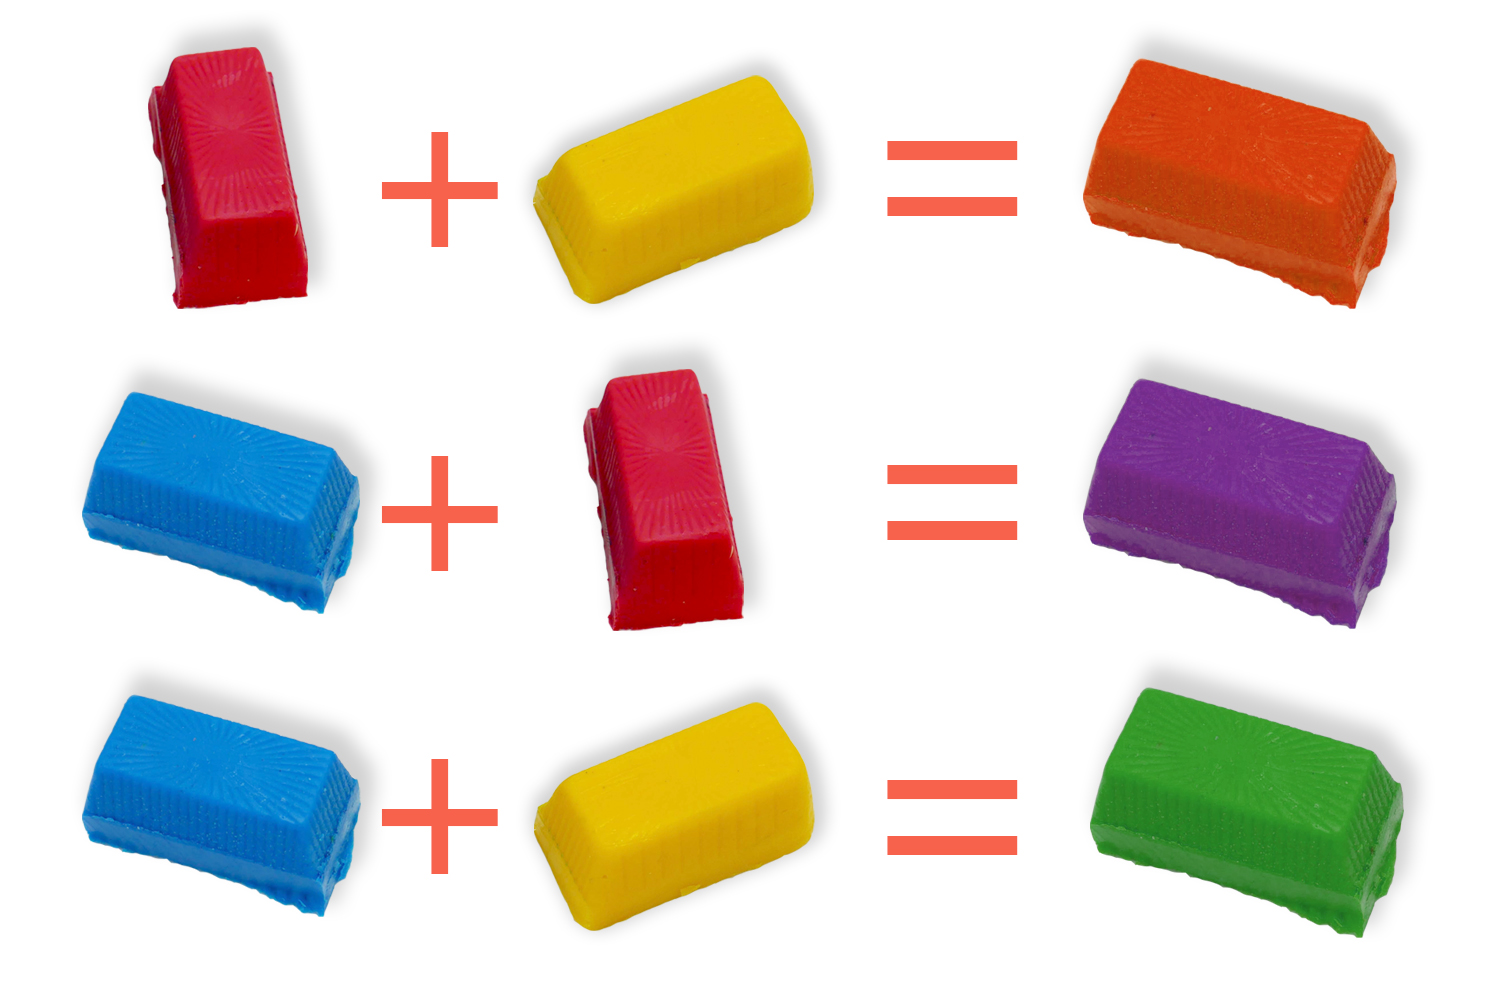 Colorants de couleurs vives pour savon à la glycérine de Make Market